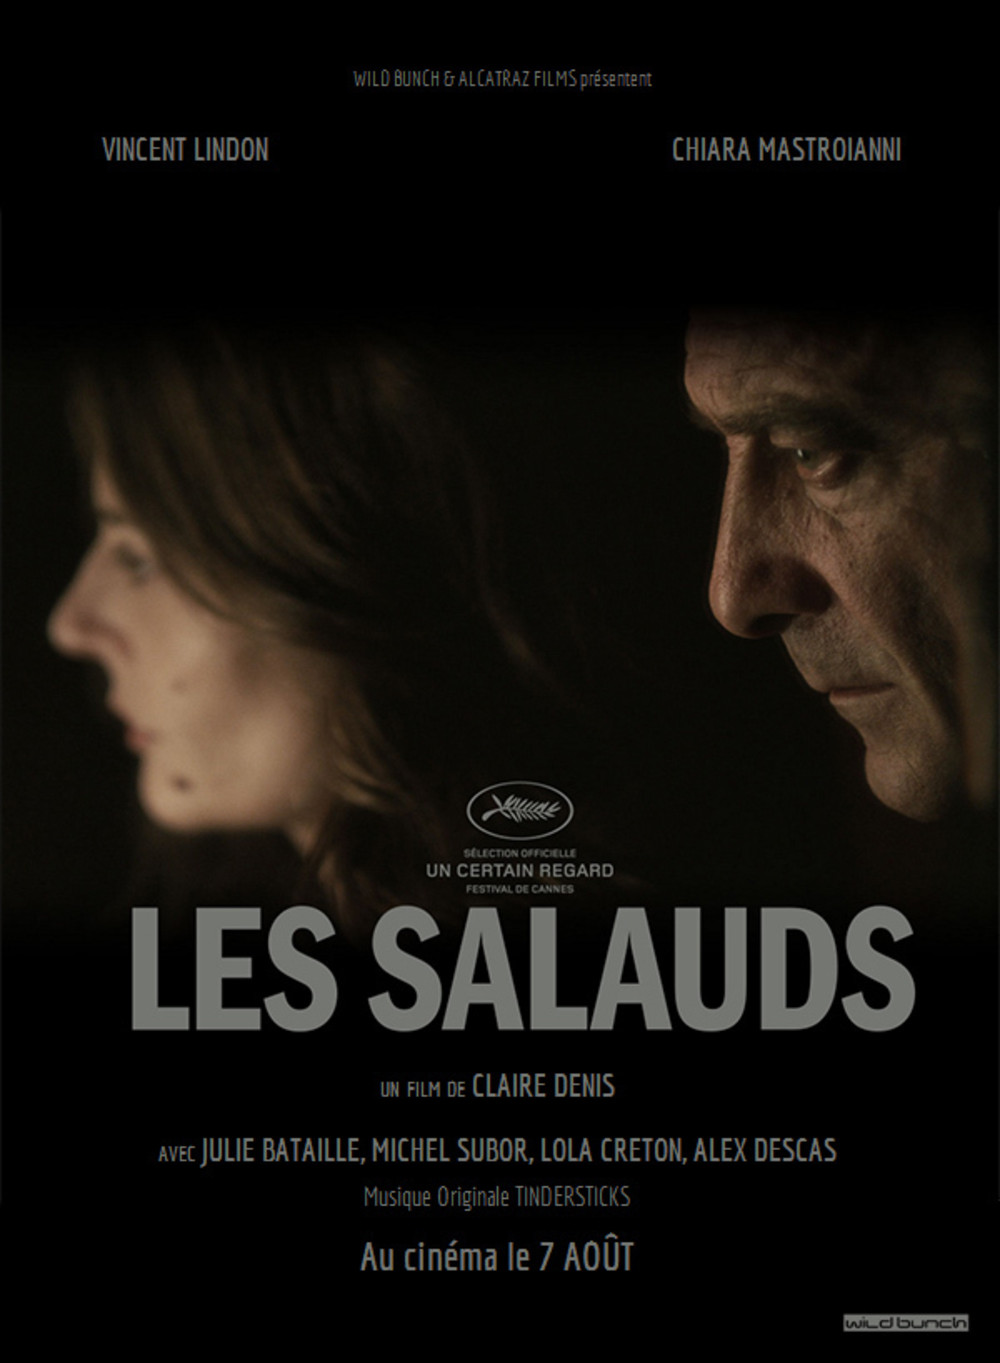 Les salauds (2013)